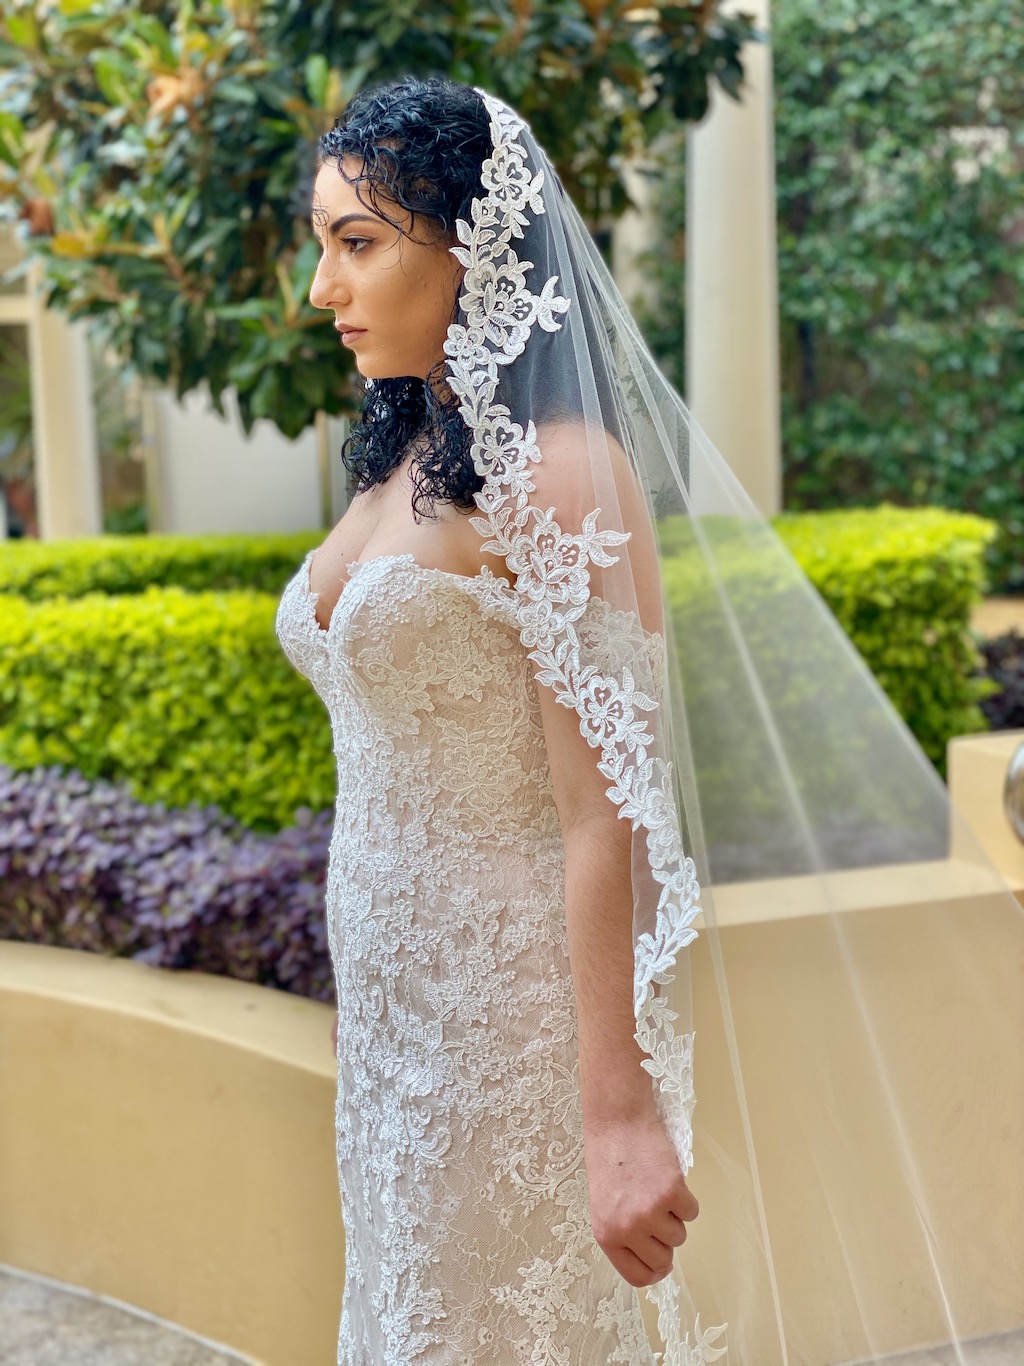 https://weddingveils.com.au/wp-content/uploads/2019/12/IMG_2150.jpeg